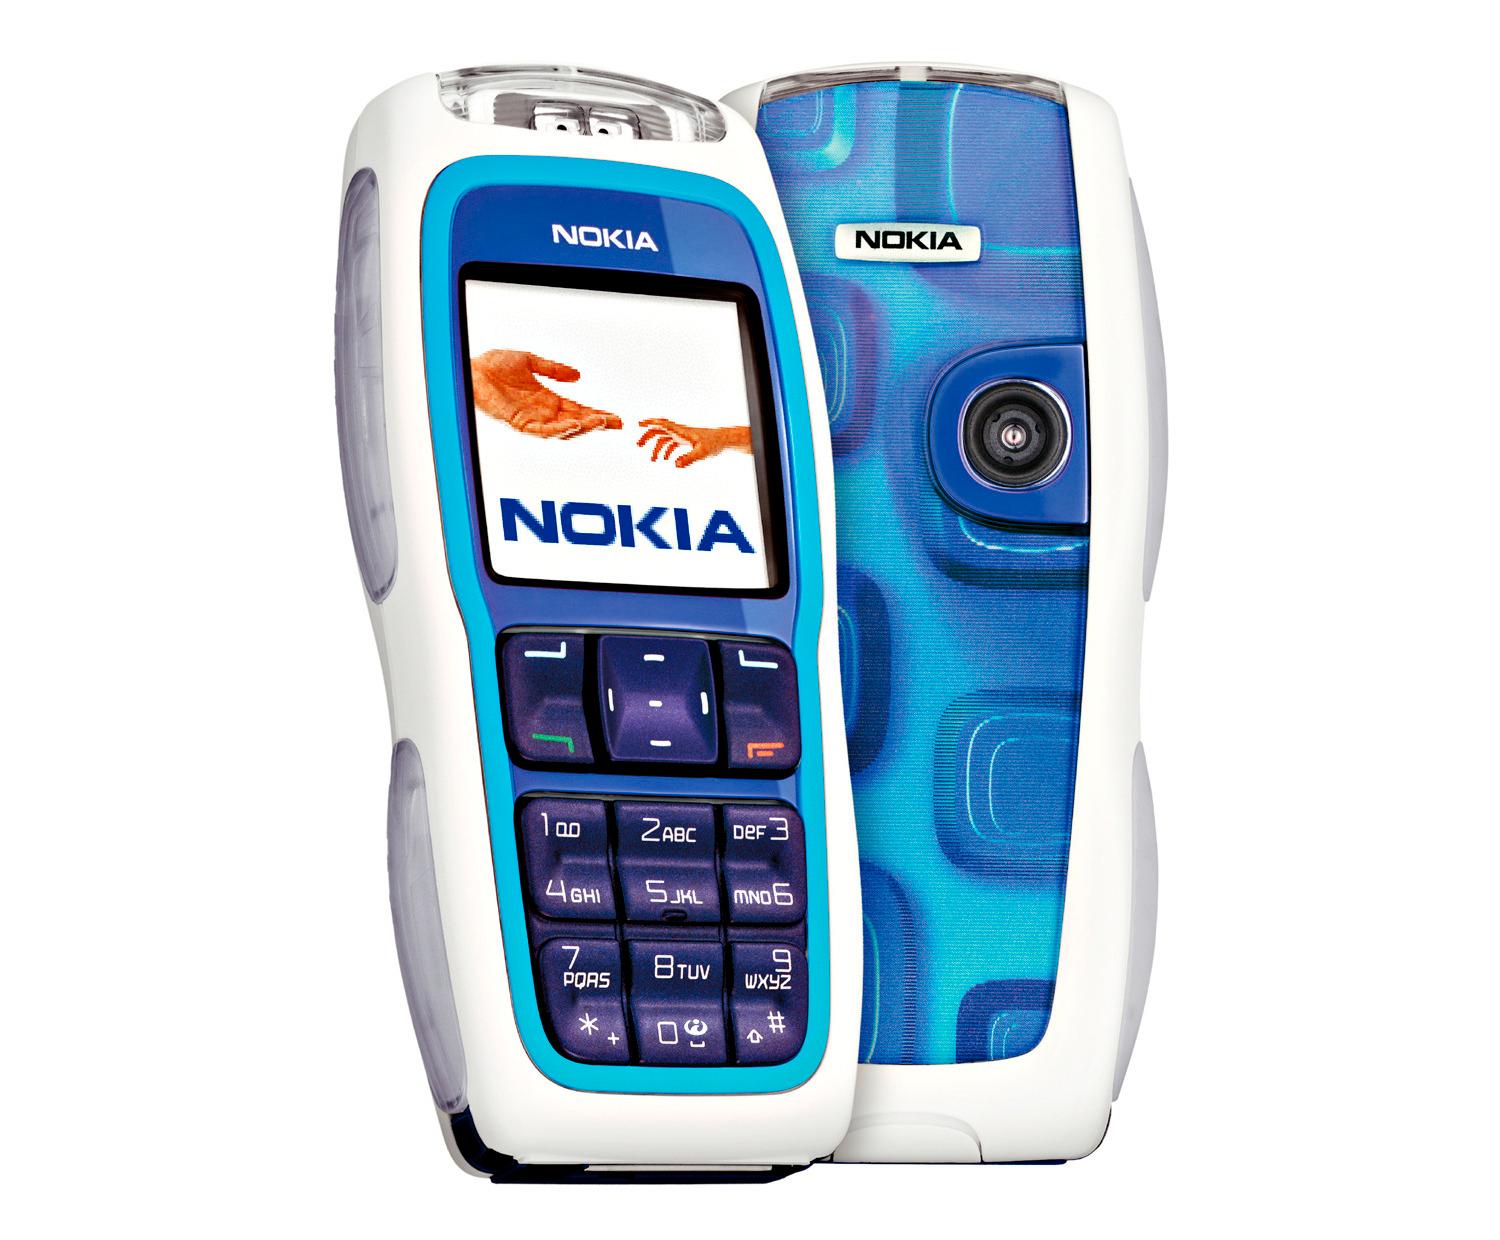 Med haugevis av LED-lys langs kantene kunne du «tegne» meldinger i luften med Nokia 3220. Funksjonen tok aldri av.Foto: Nokia